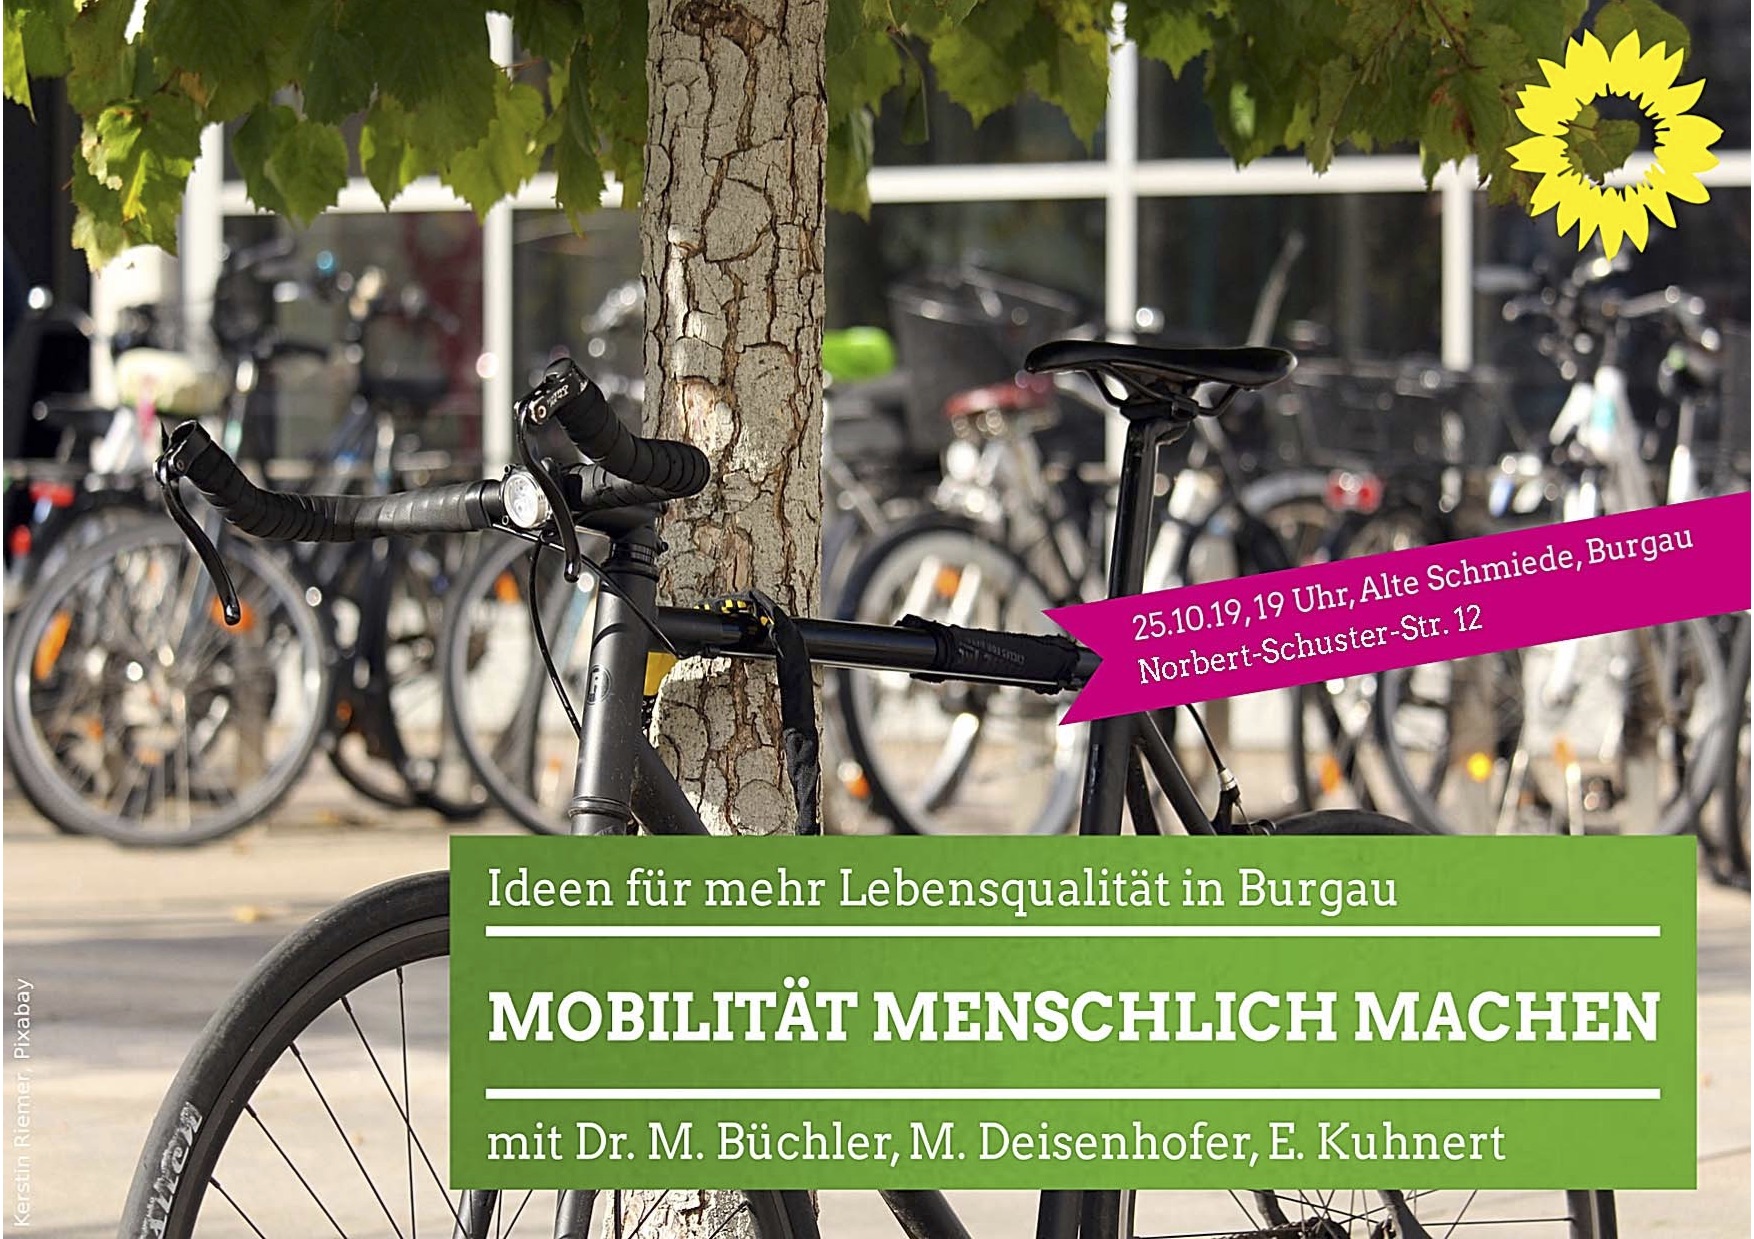 Mobilität menschlich machen! mit Dr. M. Büchler